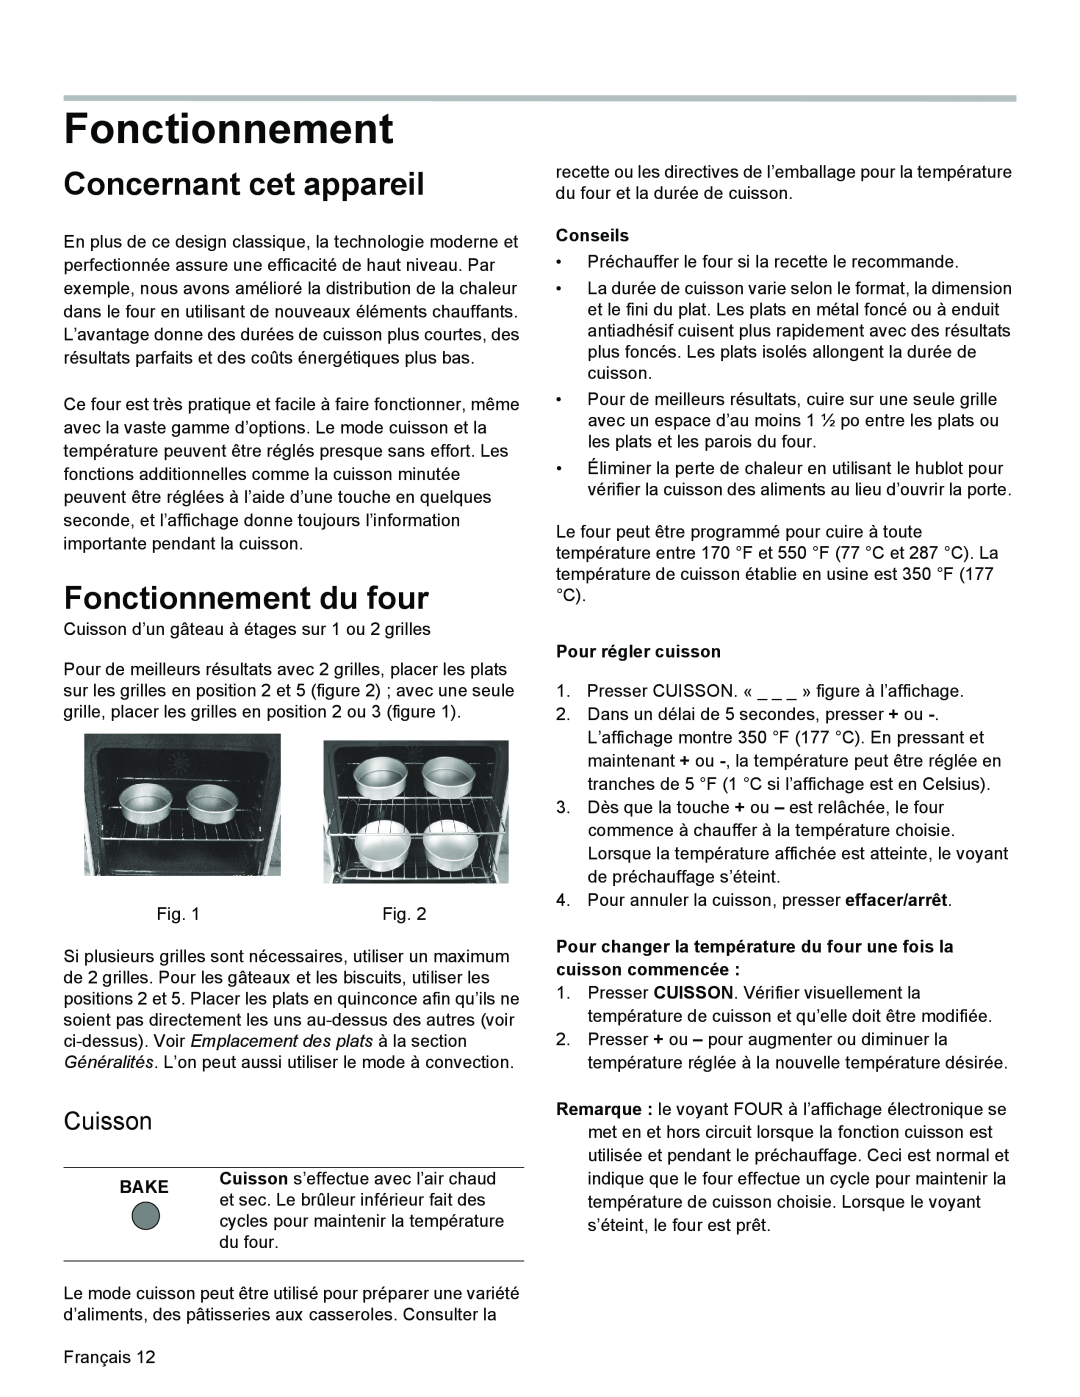 Bosch Appliances HGS3053UC manual Concernant cet appareil, Fonctionnement du four, Cuisson, Bake, Conseils 